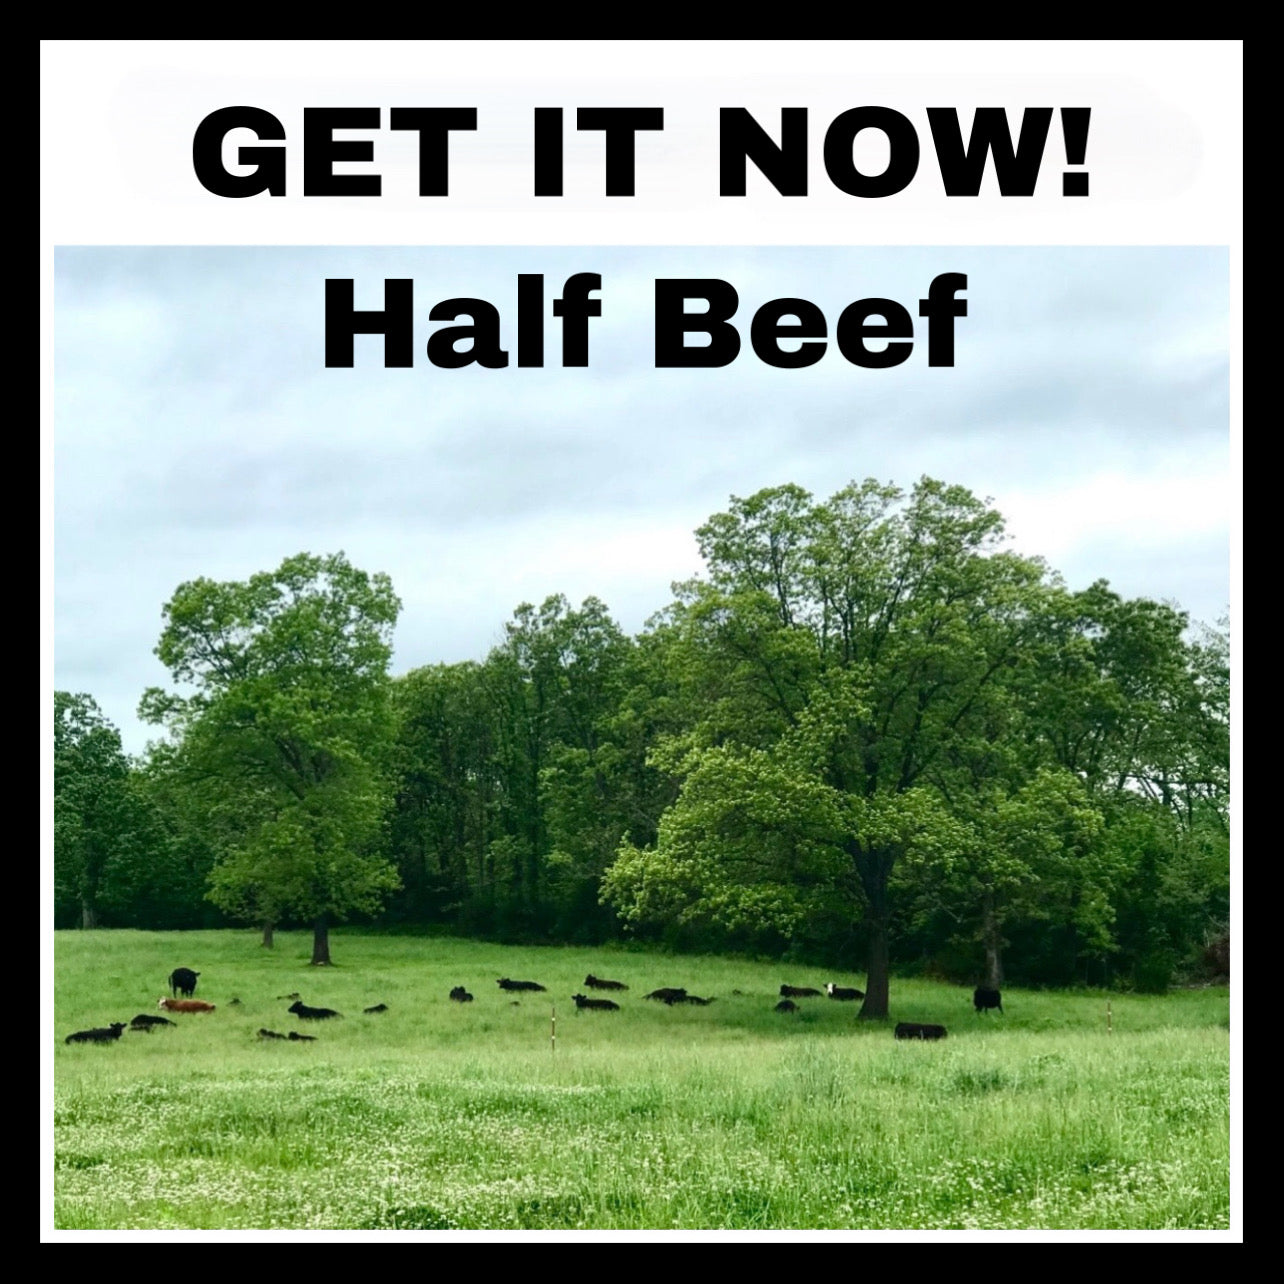 GET IT NOW! - HALF BEEF - DEPOSIT